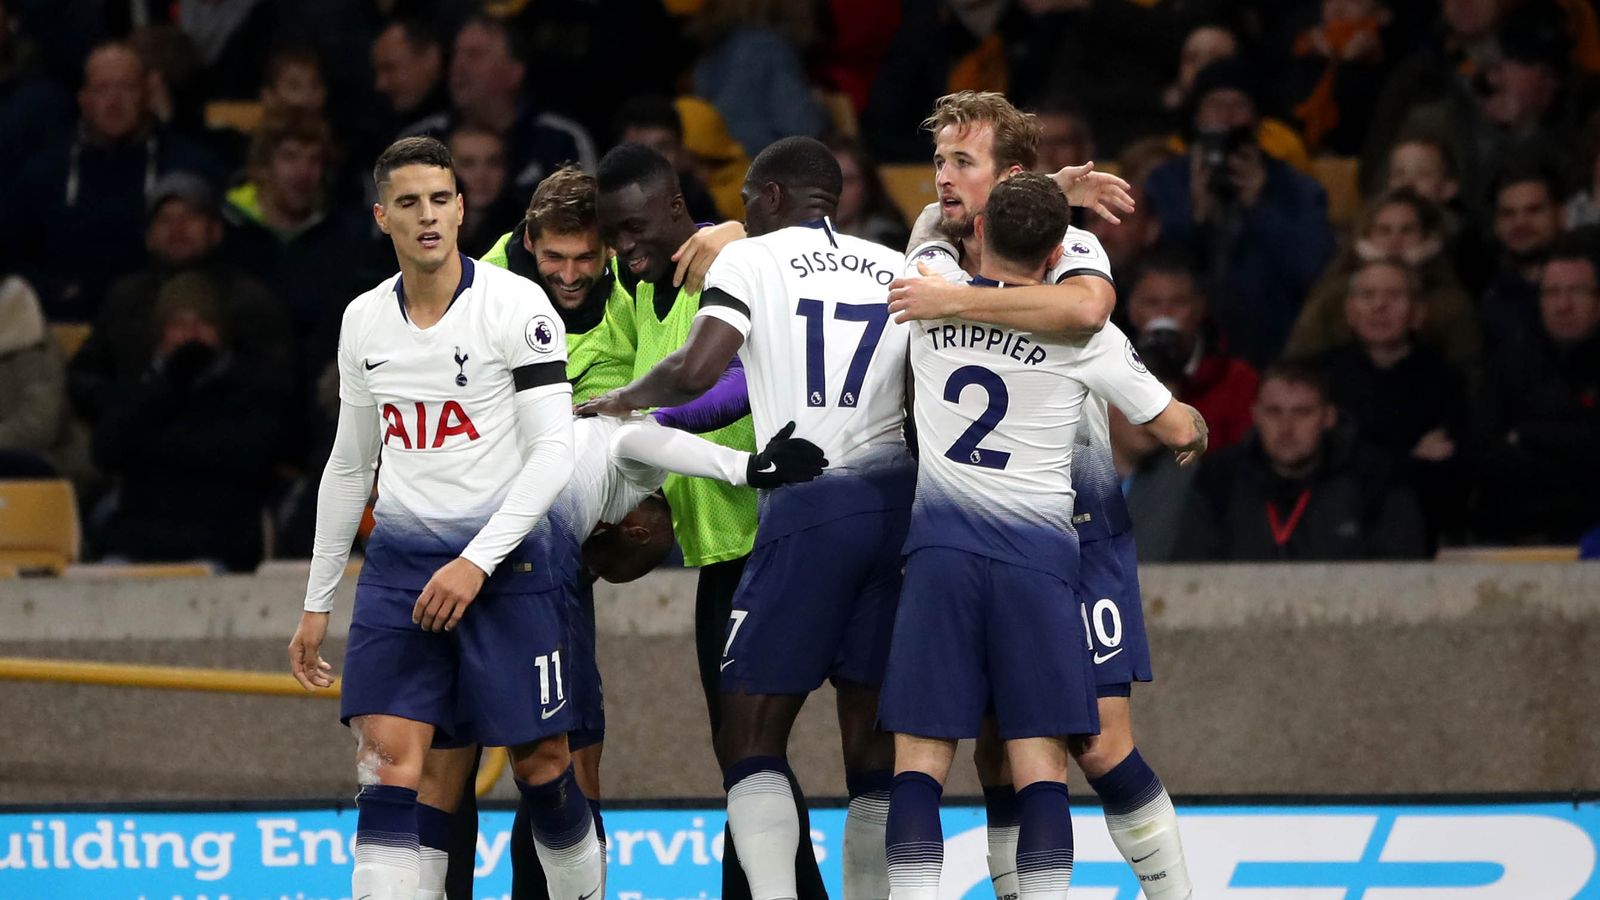 Wolves 2 - 3 Tottenham - Match Report & Highlights